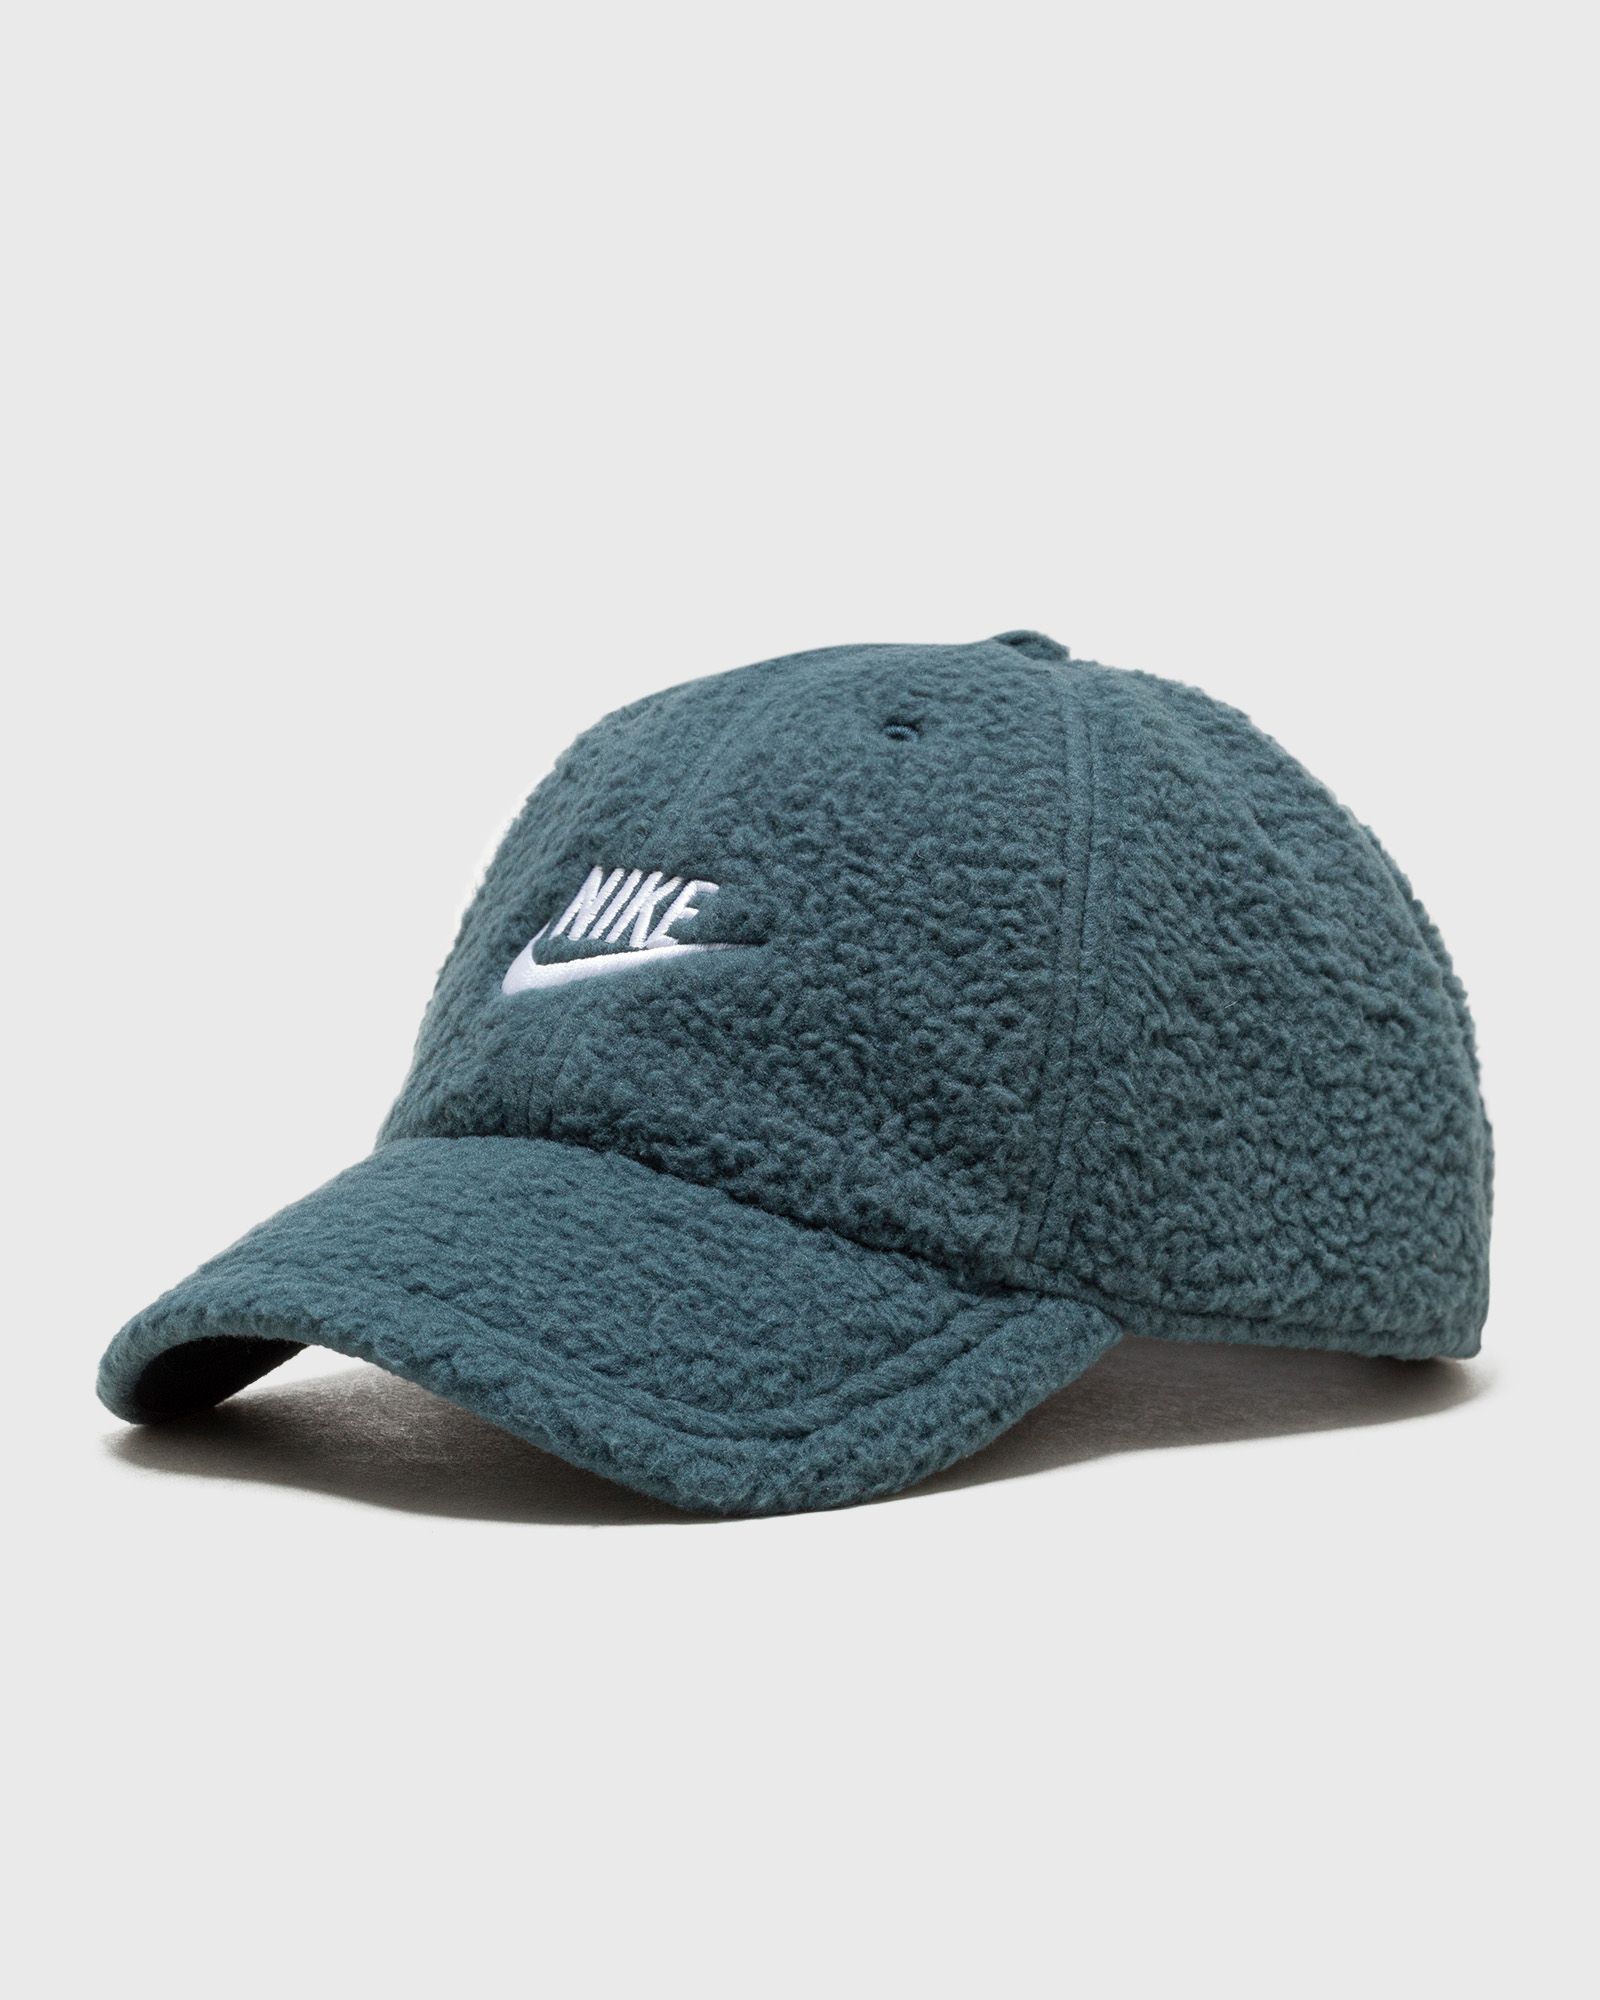 Nike - club cap unstructured curved bill cap men caps green in größe:l/xl